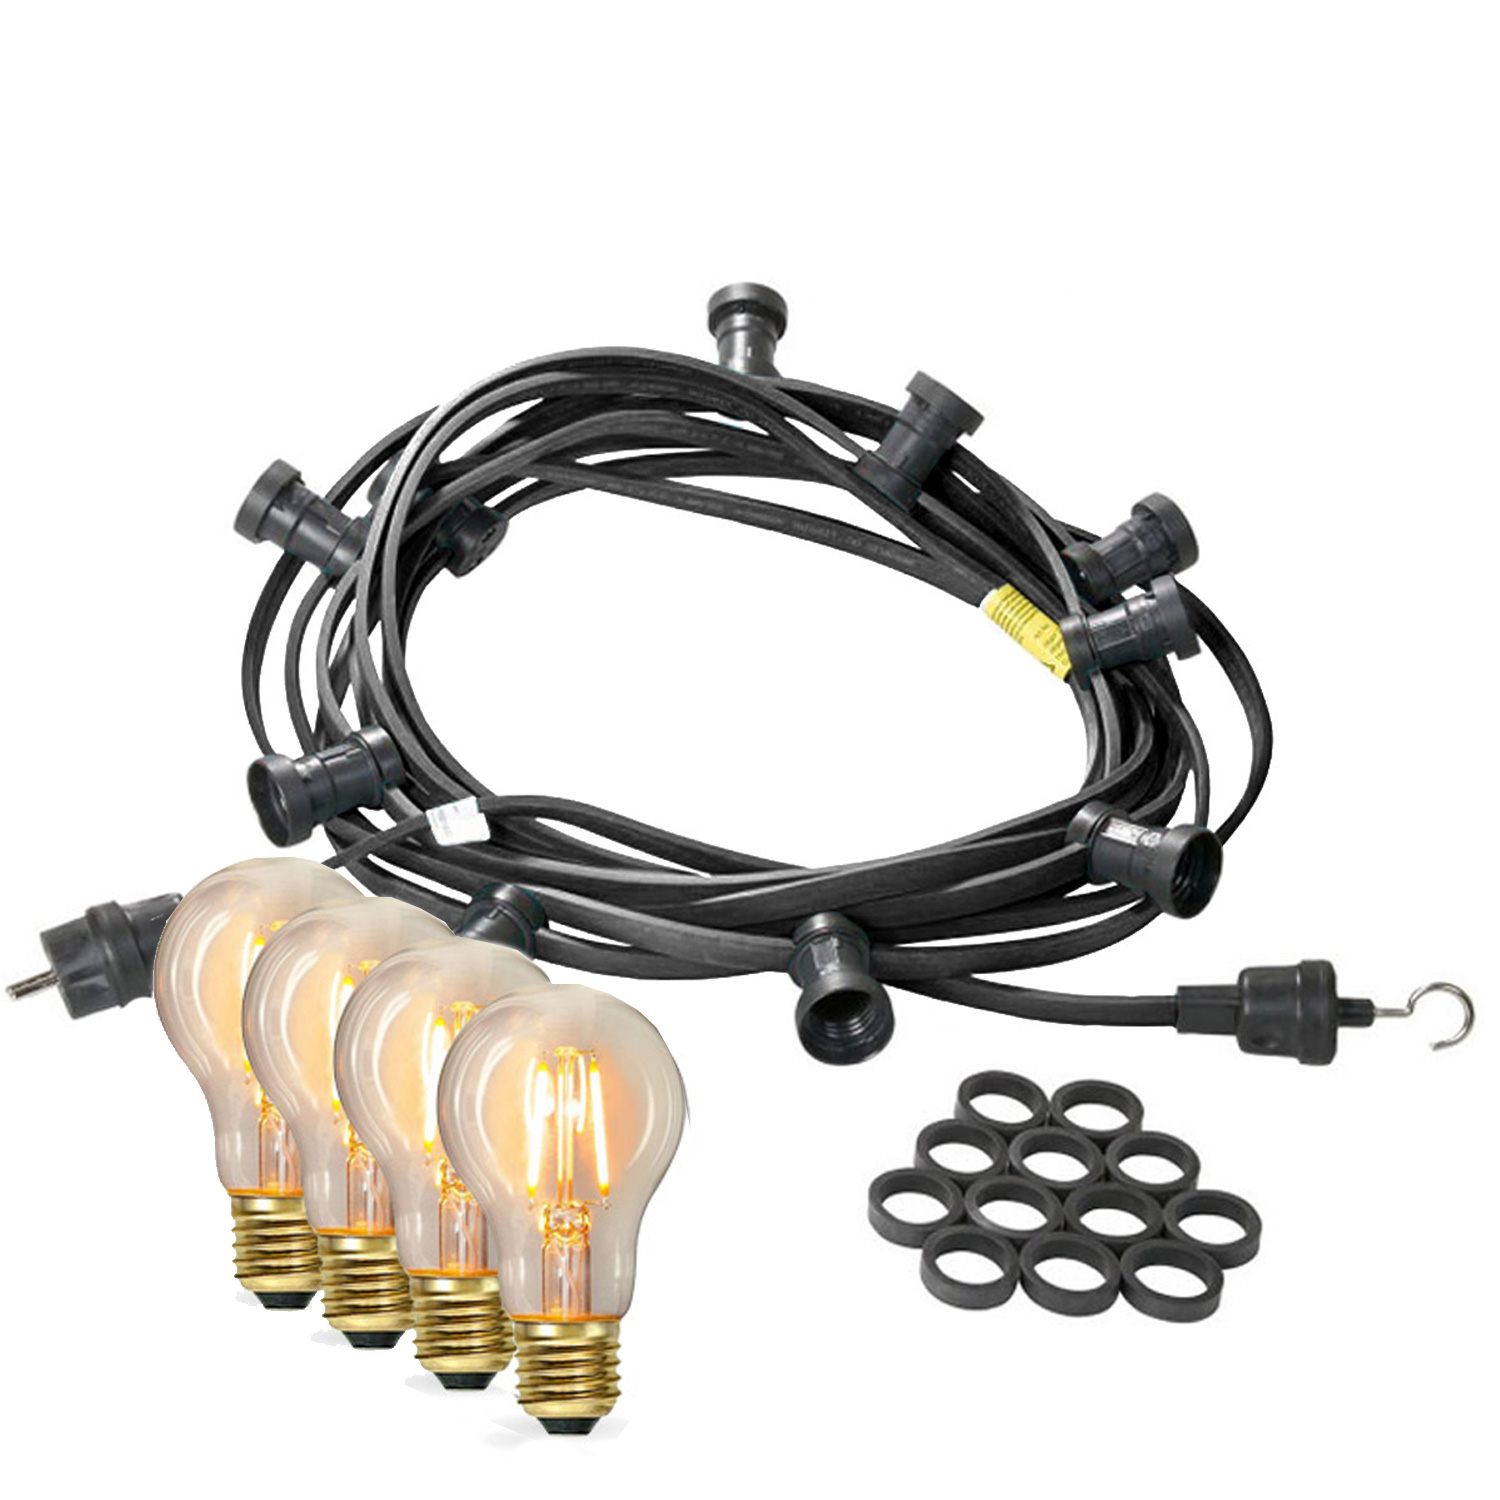 Illu-/Partylichterkette 50m - Außenlichterkette - Made in Germany - 50 x Edison LED Filamentlampen